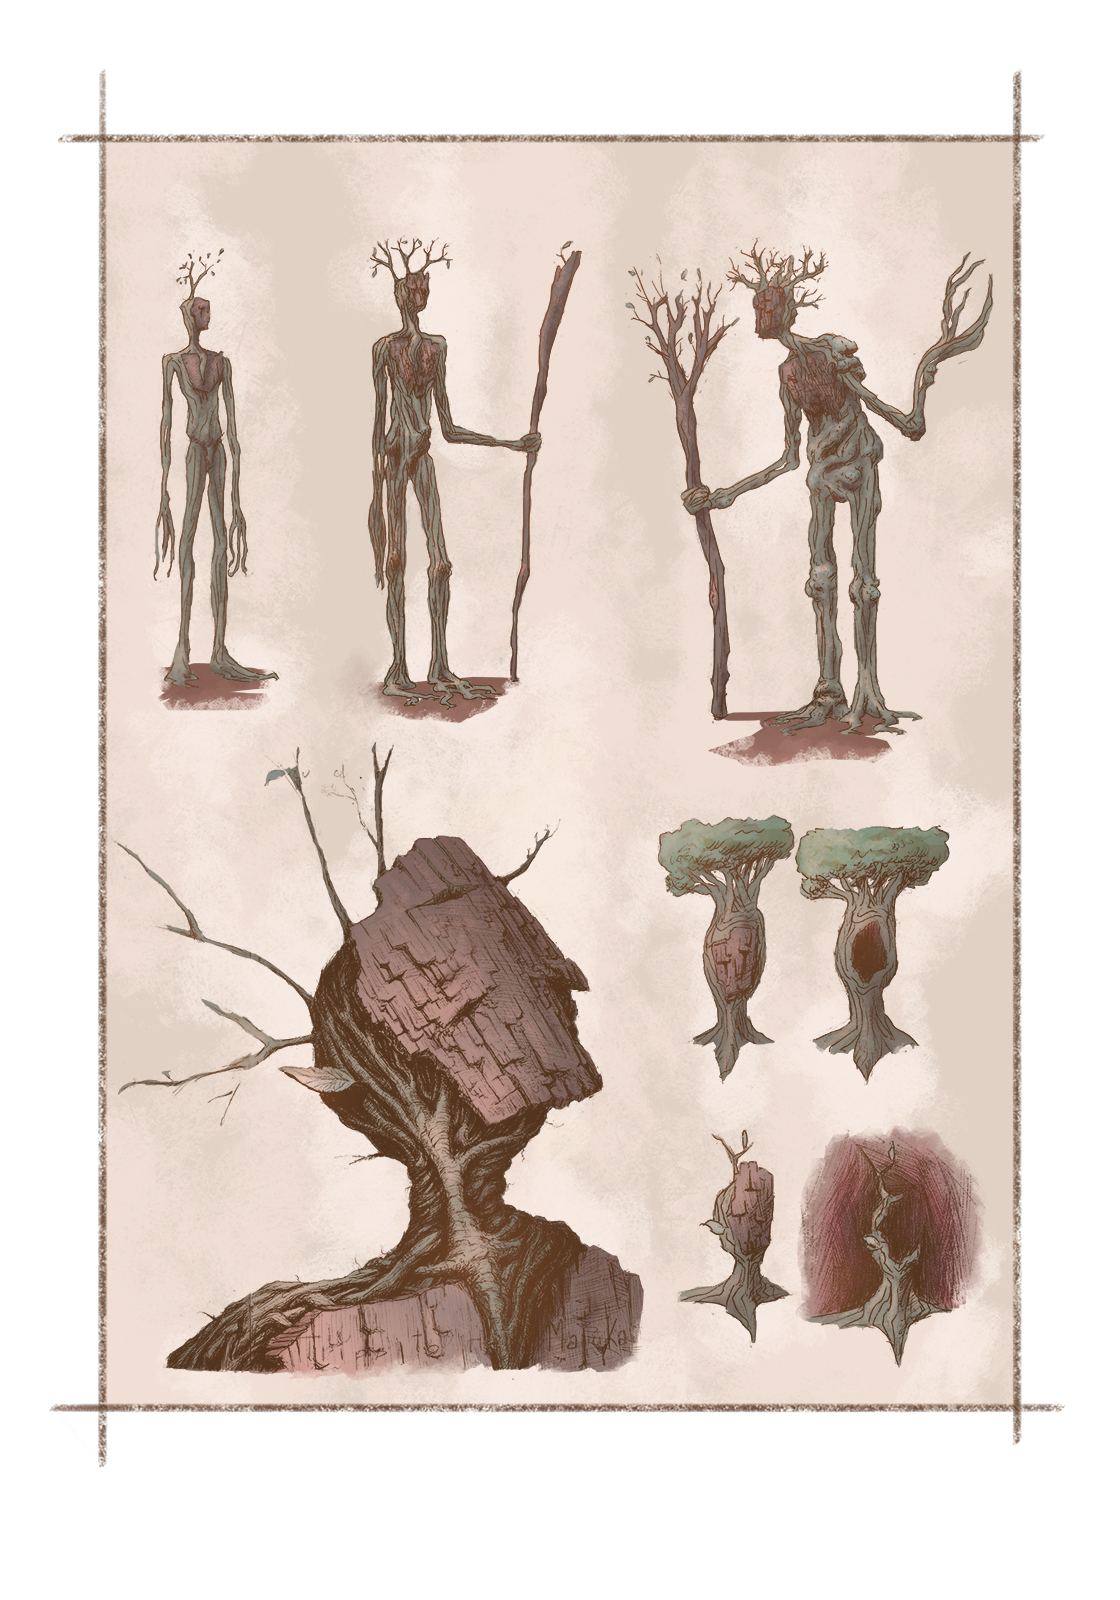 Tree-people character design: digital illustration